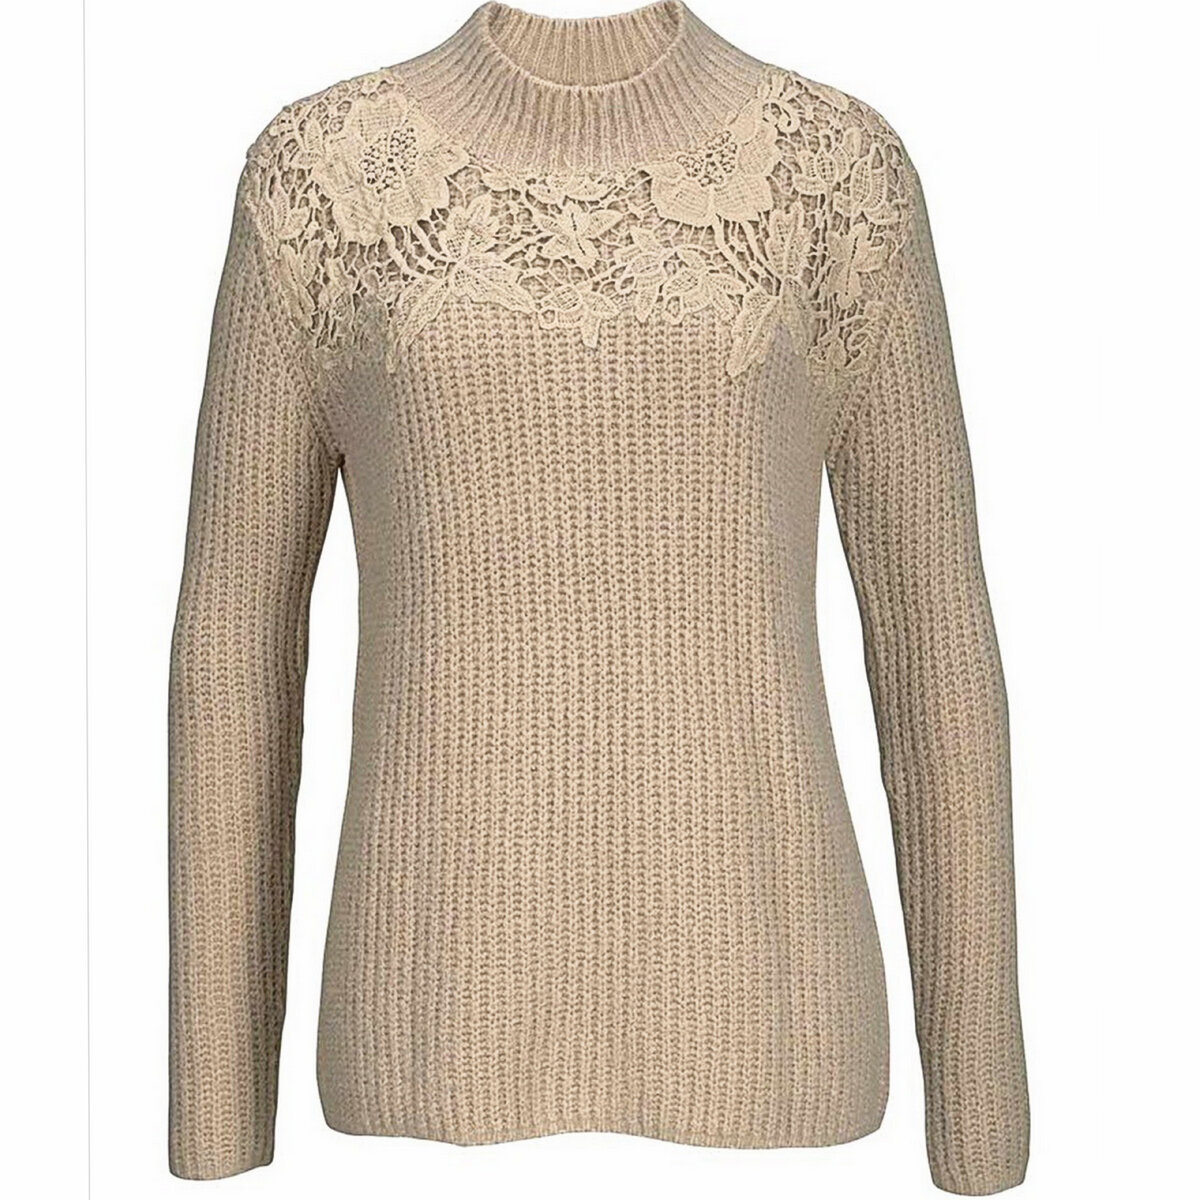 Женские свитера с кружевом : купить свитер с кружевом недорого - Клубок (ранее Клумба)